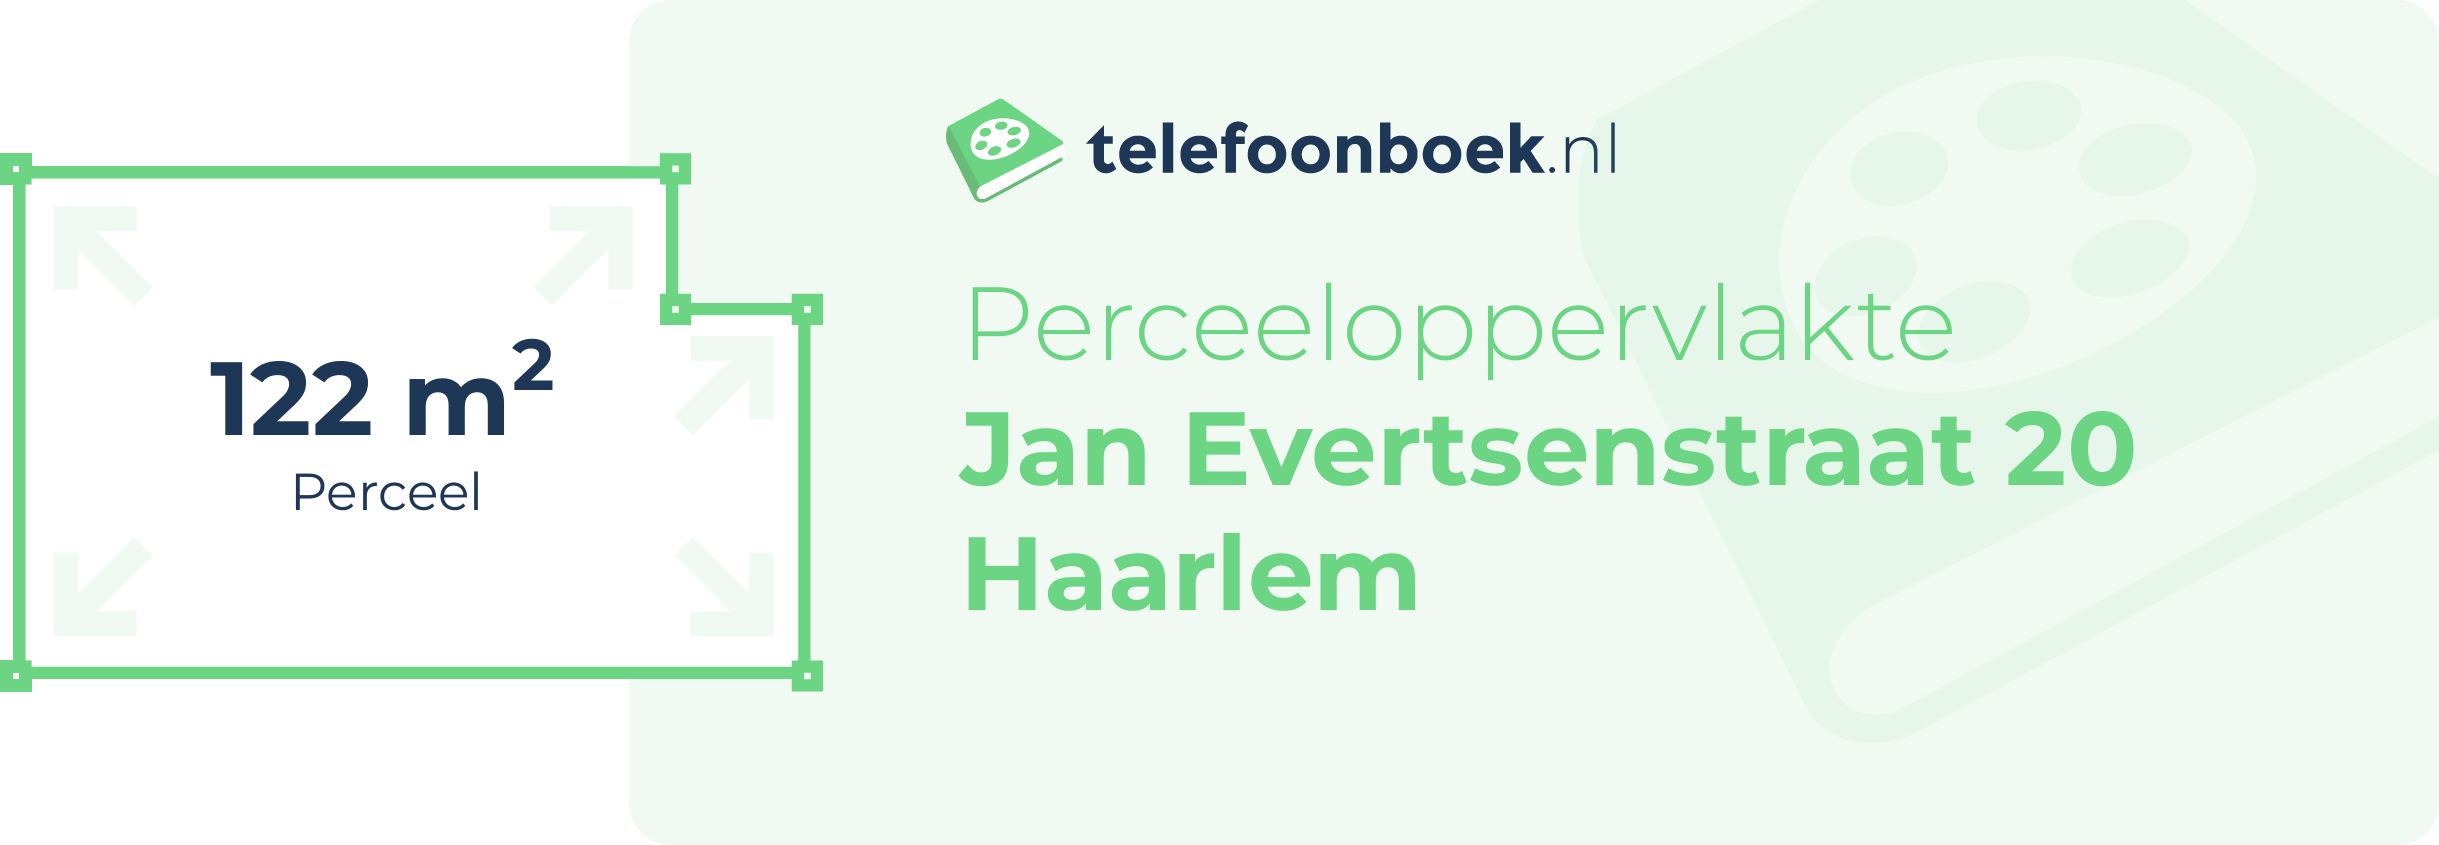 Perceeloppervlakte Jan Evertsenstraat 20 Haarlem